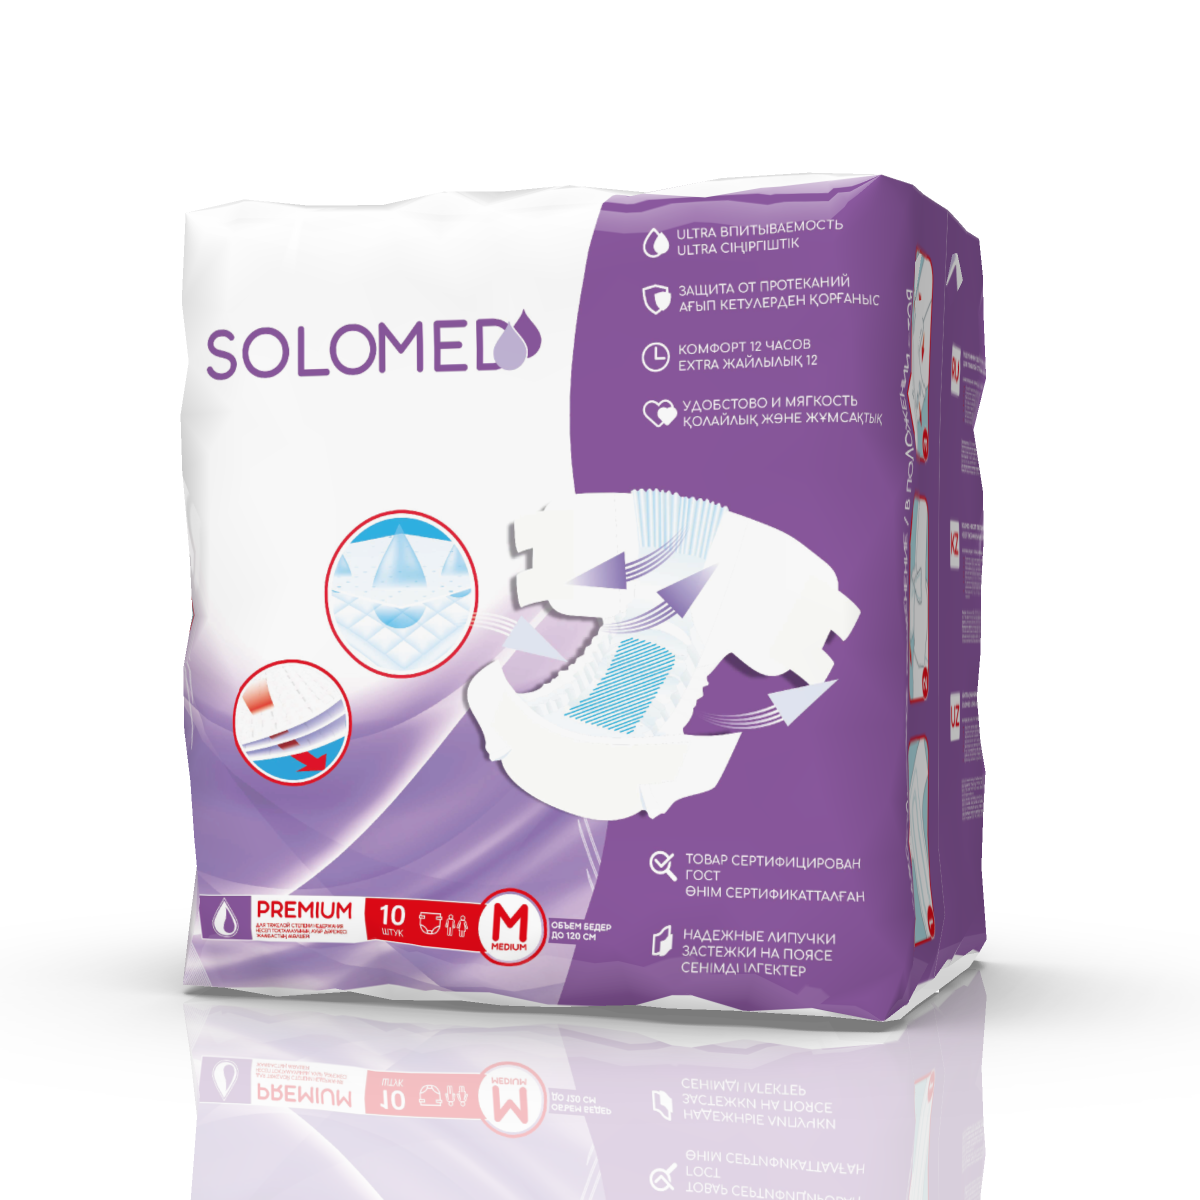 Solomed Premium, подгузники для взрослых (размер M), 10 шт. центр компресс гольфы компрессионные с открытым мыском i класс компрессии размер 5 черные 1 пара